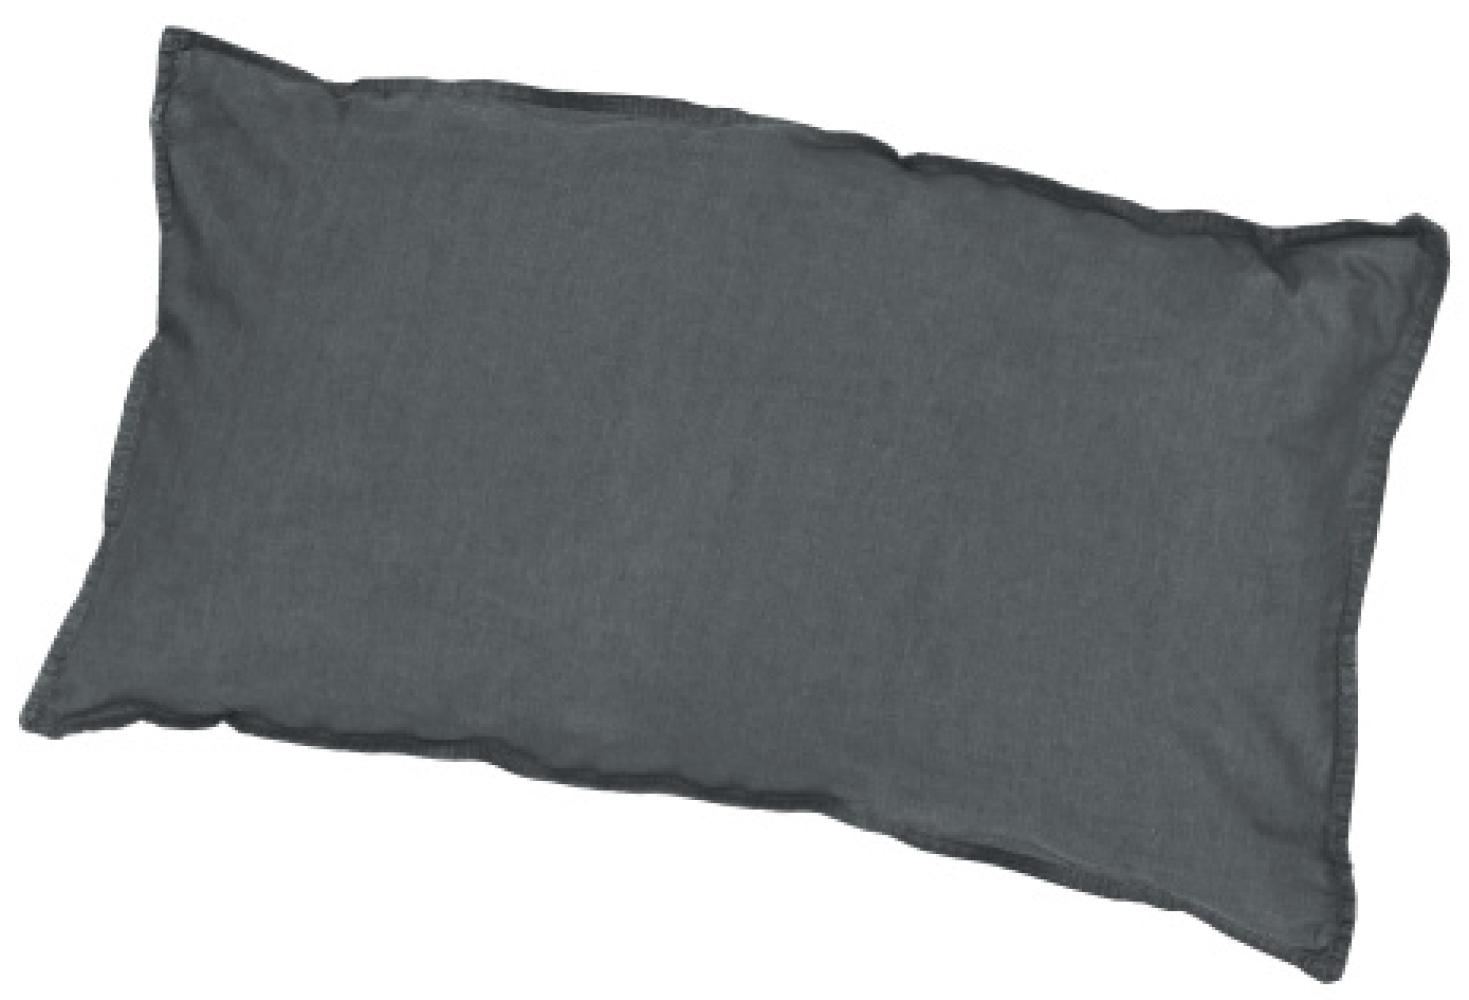 Traumhaft gut schlafen Stone-Washed-Bettwäsche aus 100% Baumwolle, in versch. Farben und Größen : 40 x 80 cm : Graphit Bild 1